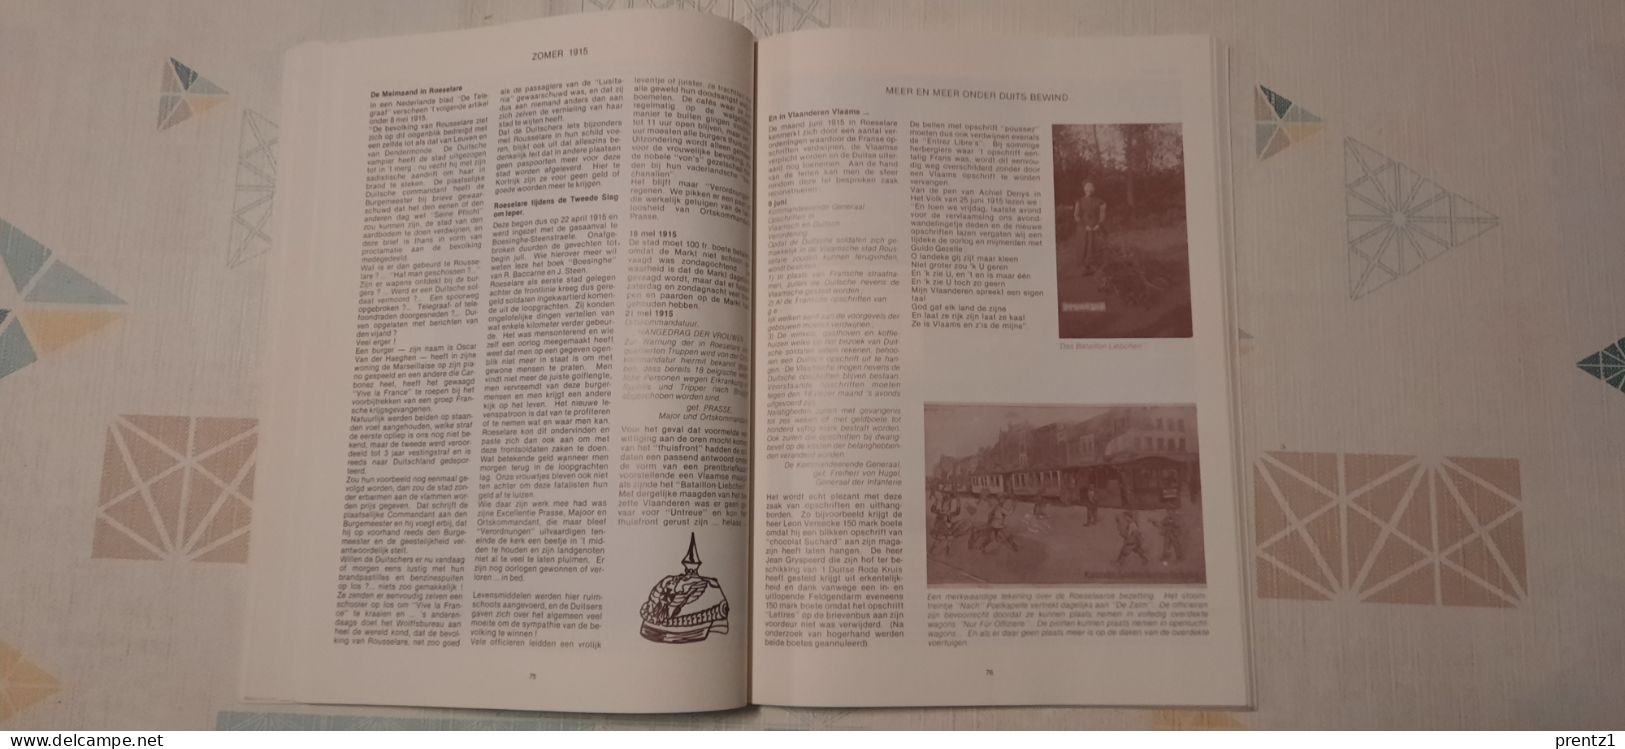 Boek : Oorlogskroniek 1914-1918 - Roeselare met tal van foto's en real data